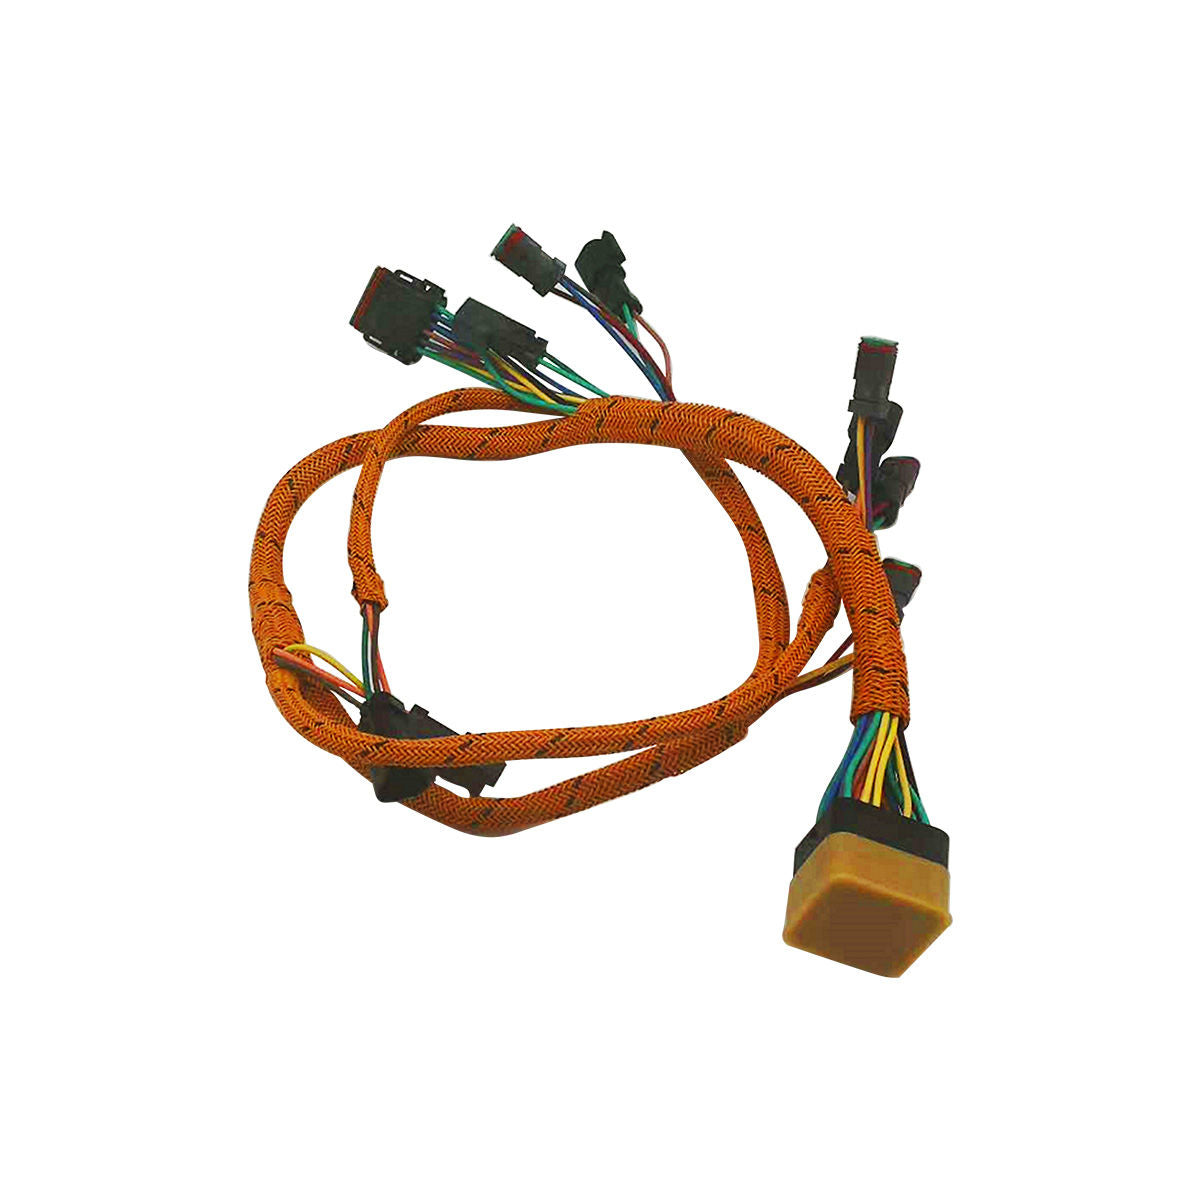 117-2763 Wiring Harness for Caterpillar E345B - Sinocmp